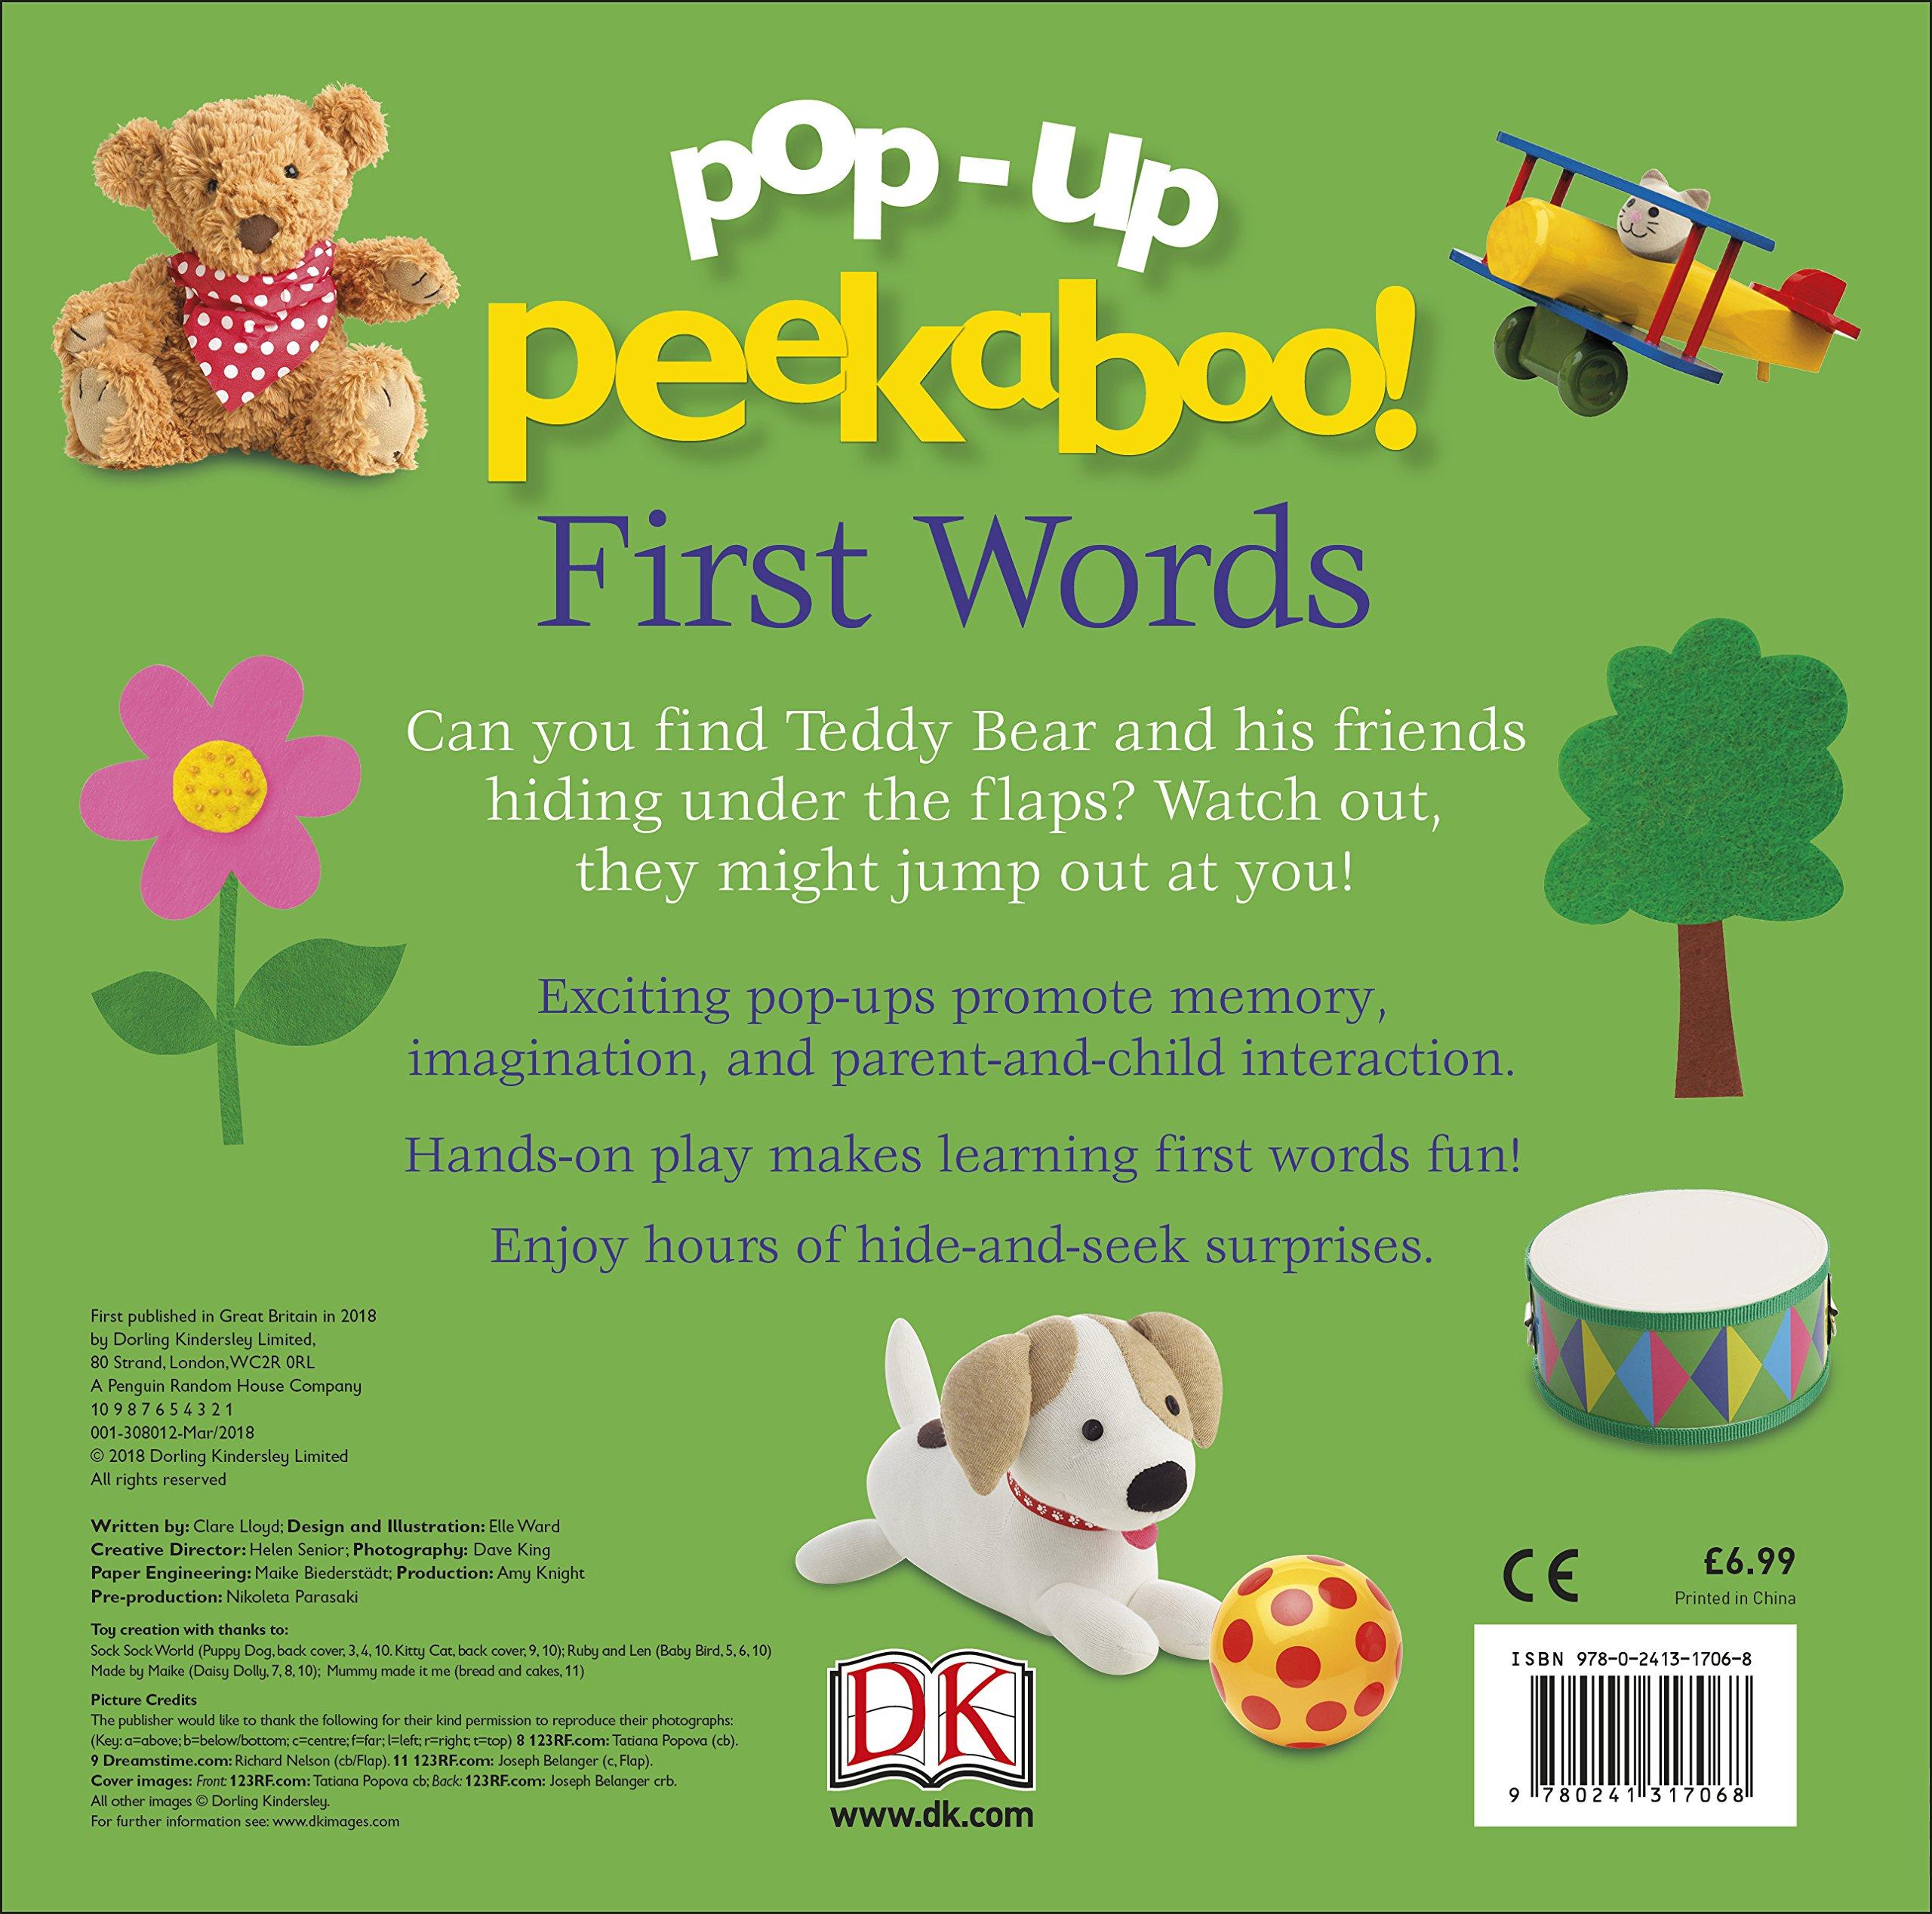 Pop Up Peekaboo! First Words